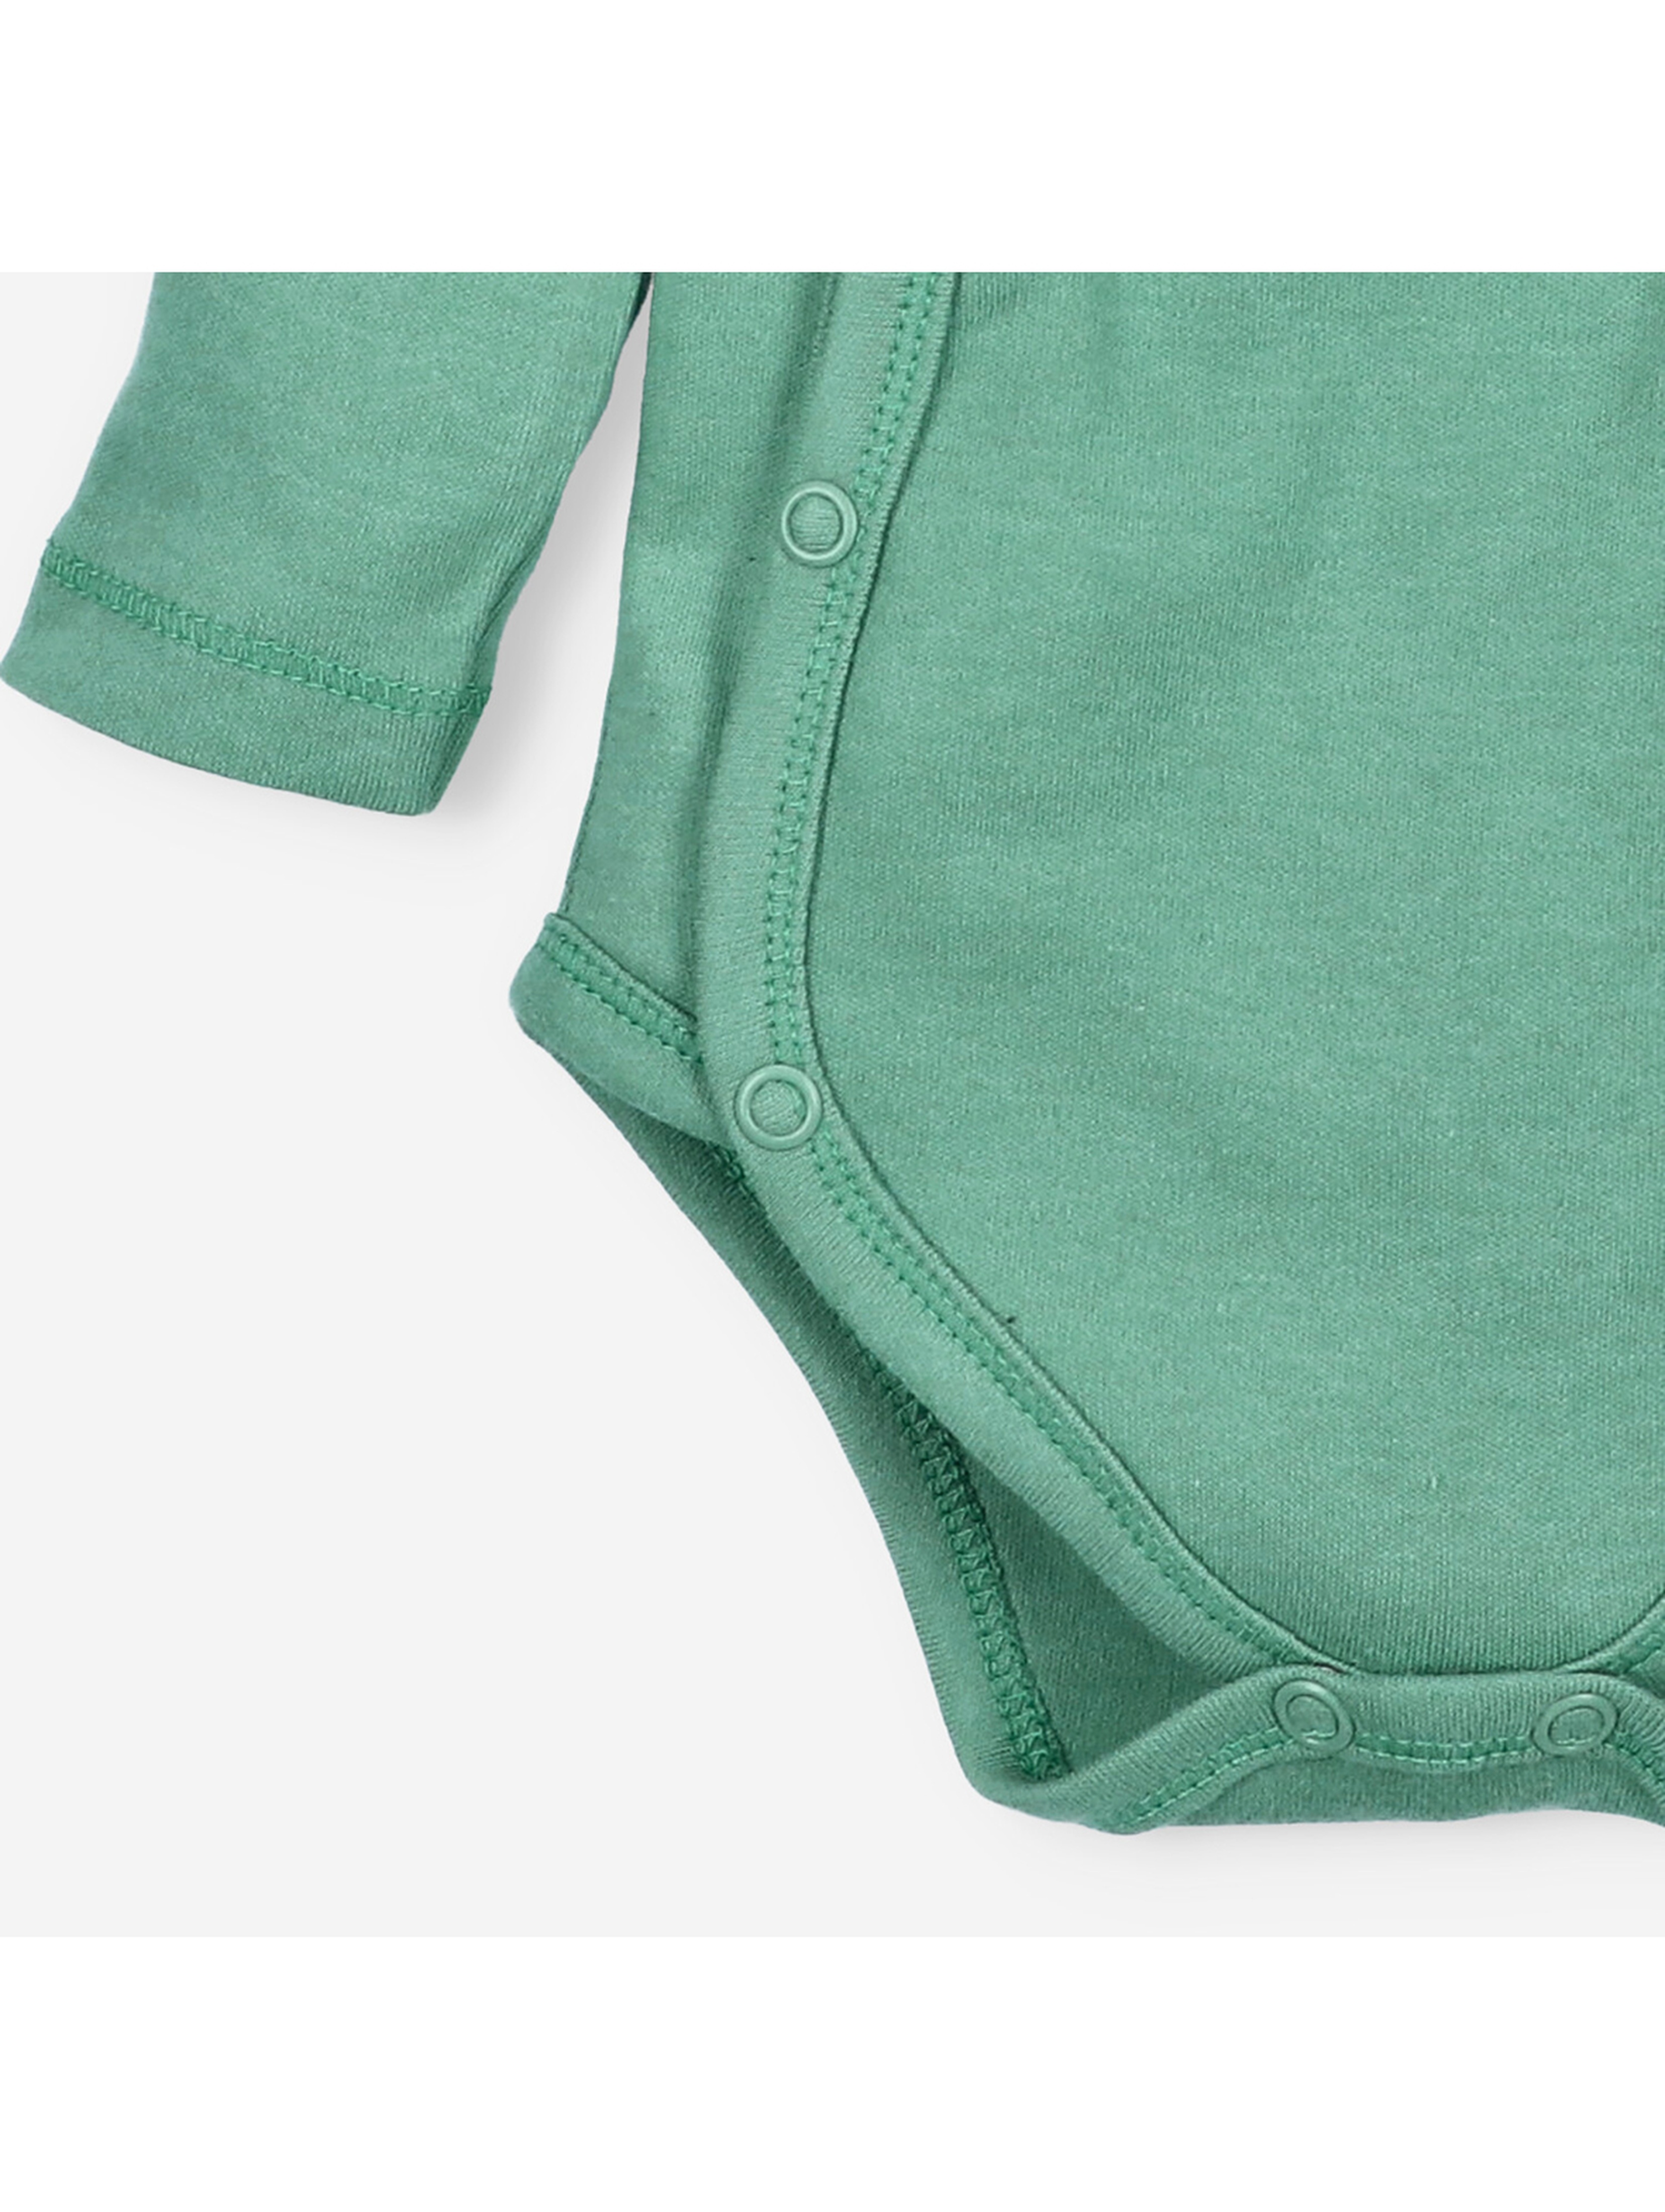 Body niemowlęce z bawełny organicznej dla chłopca zielone długi rękaw